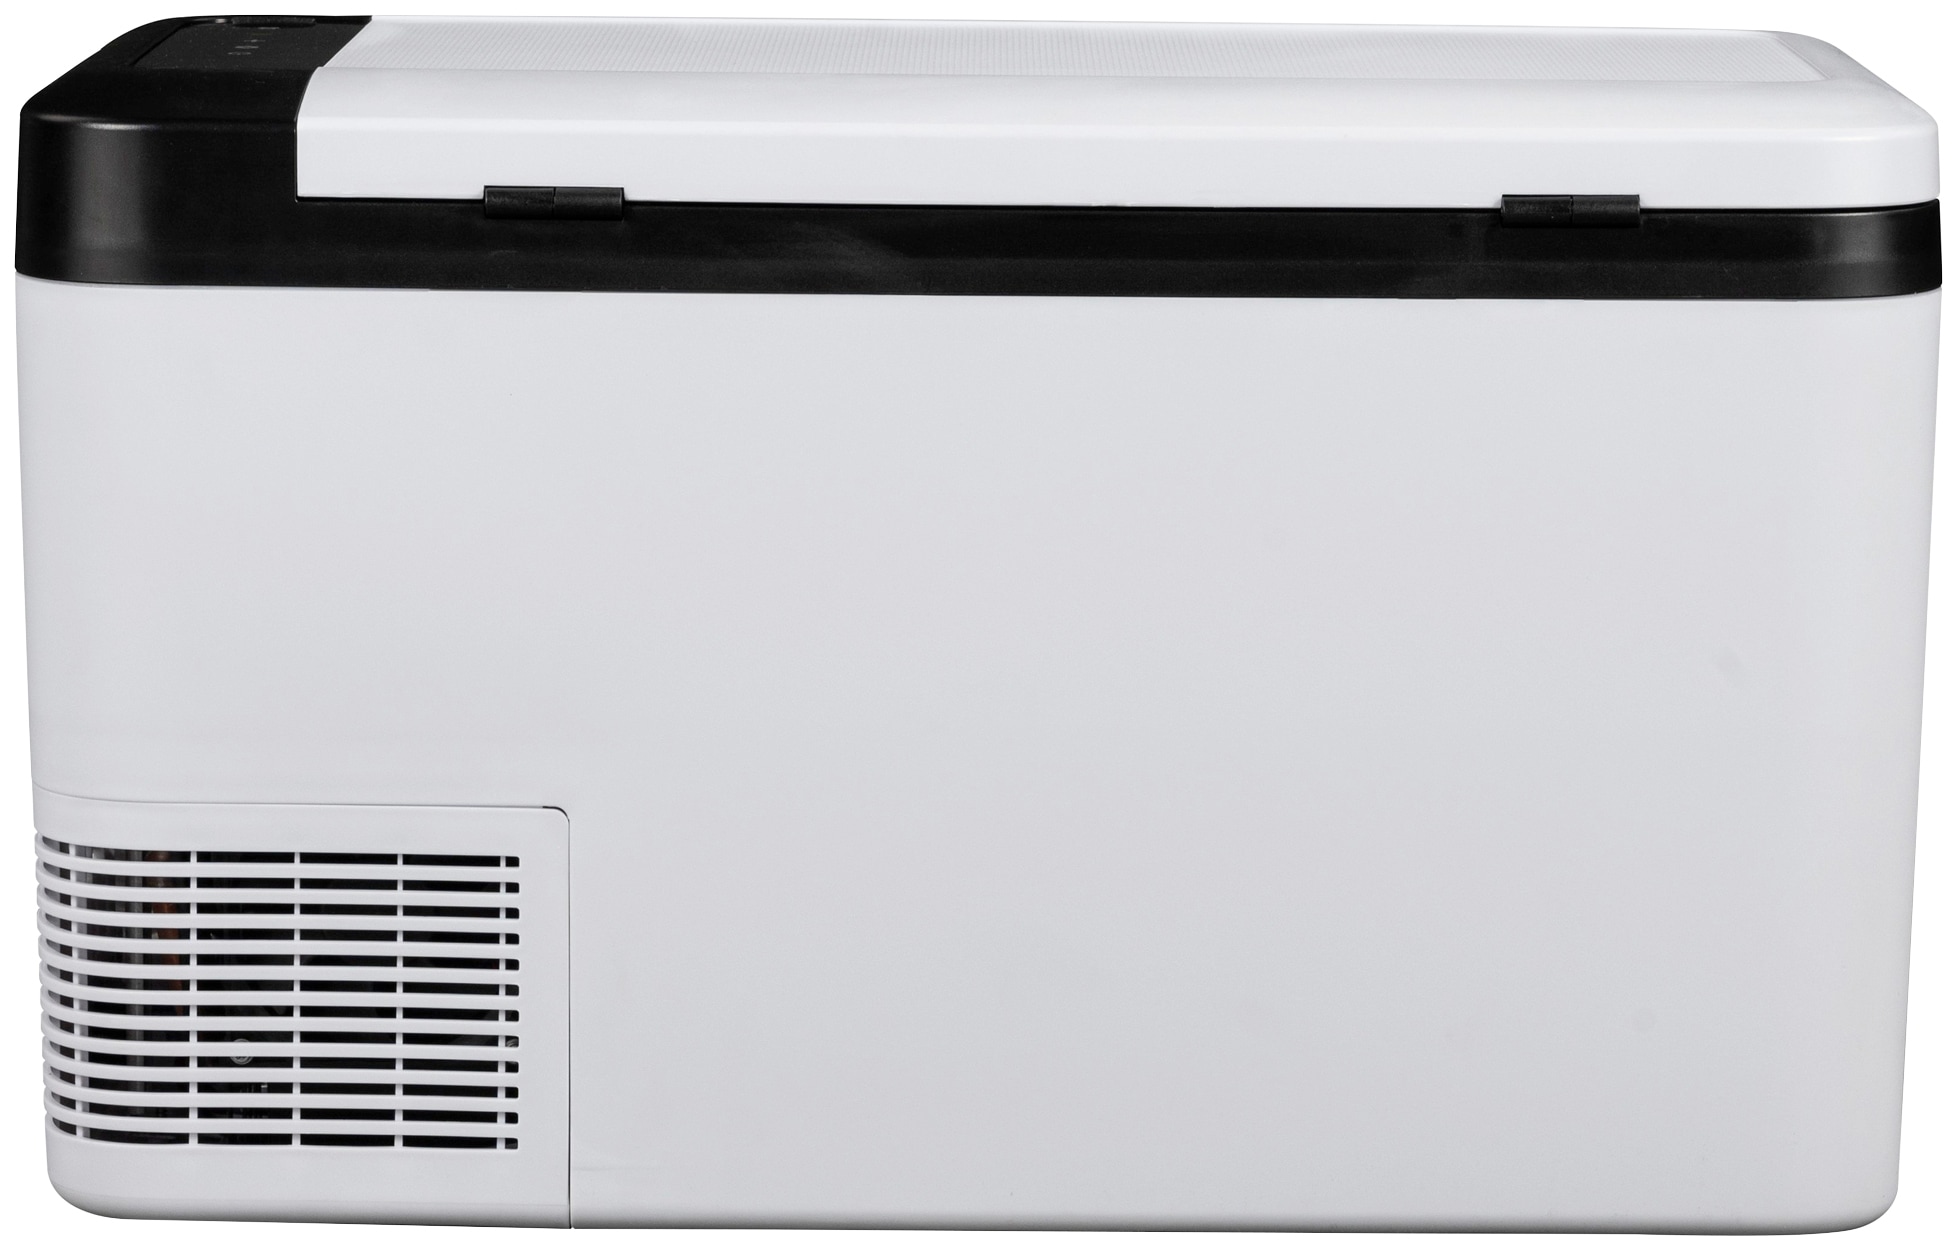 ALPICOOL Elektrische Kühlbox CF35, 35 l, 35L Kompressor-Kühlbox